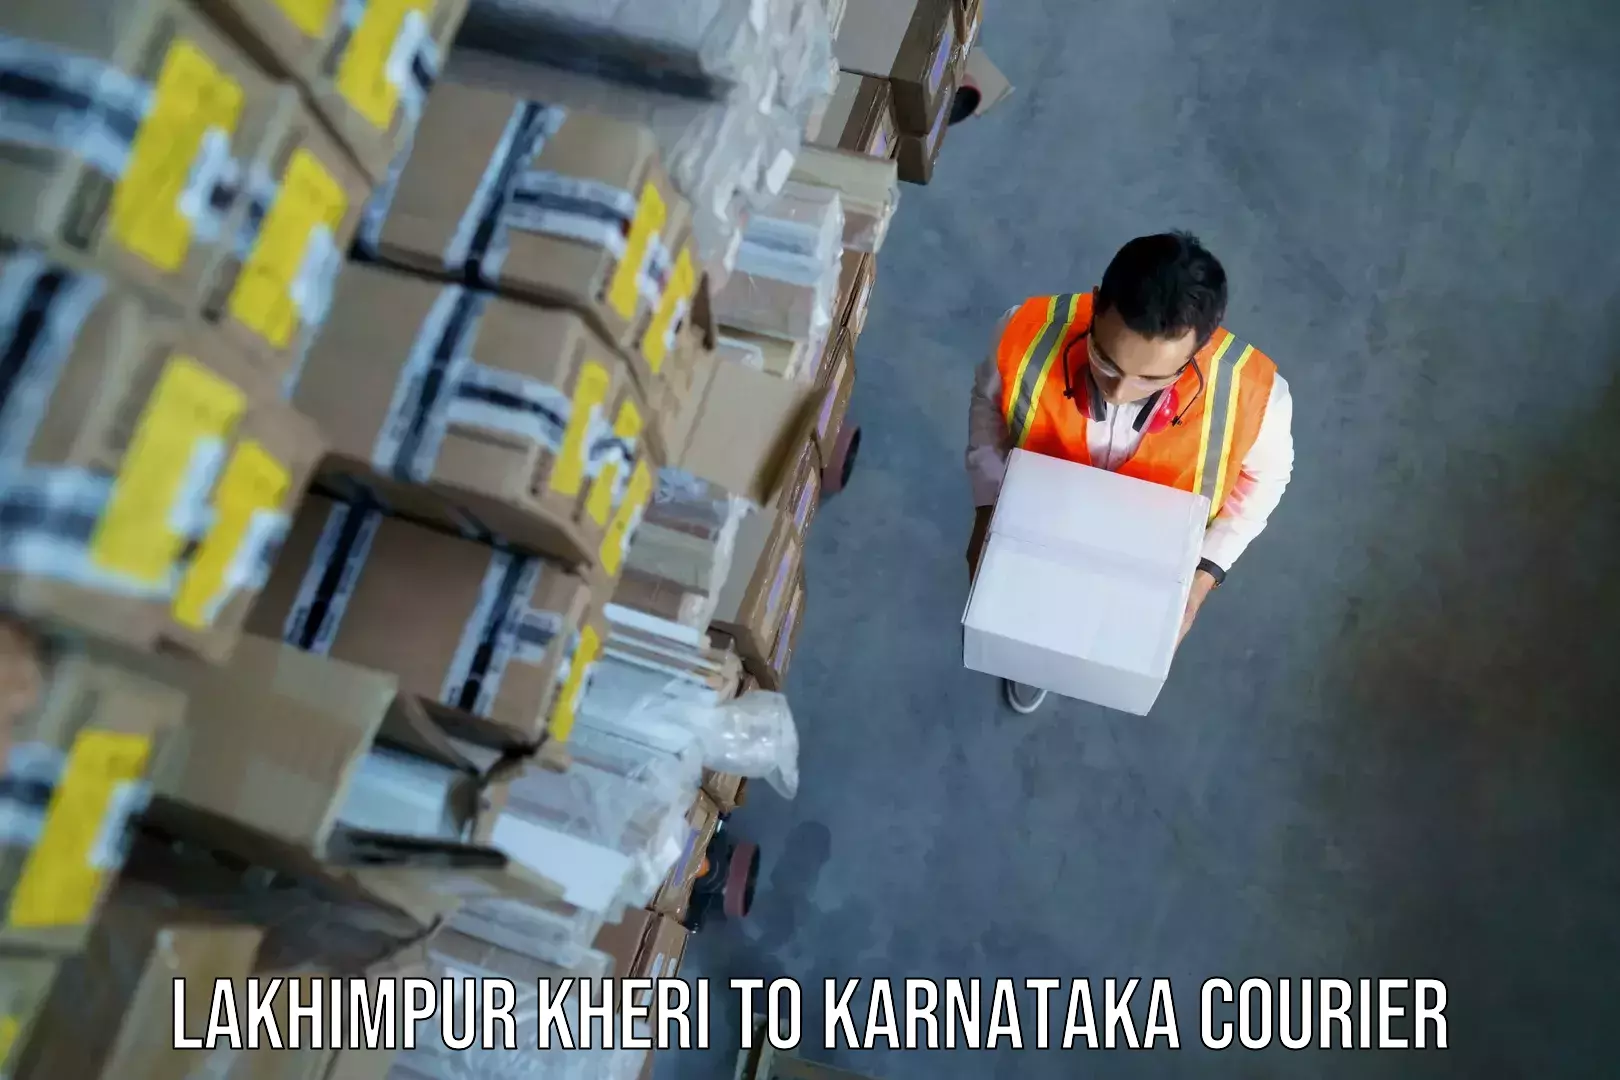 Baggage shipping service Lakhimpur Kheri to Hubli